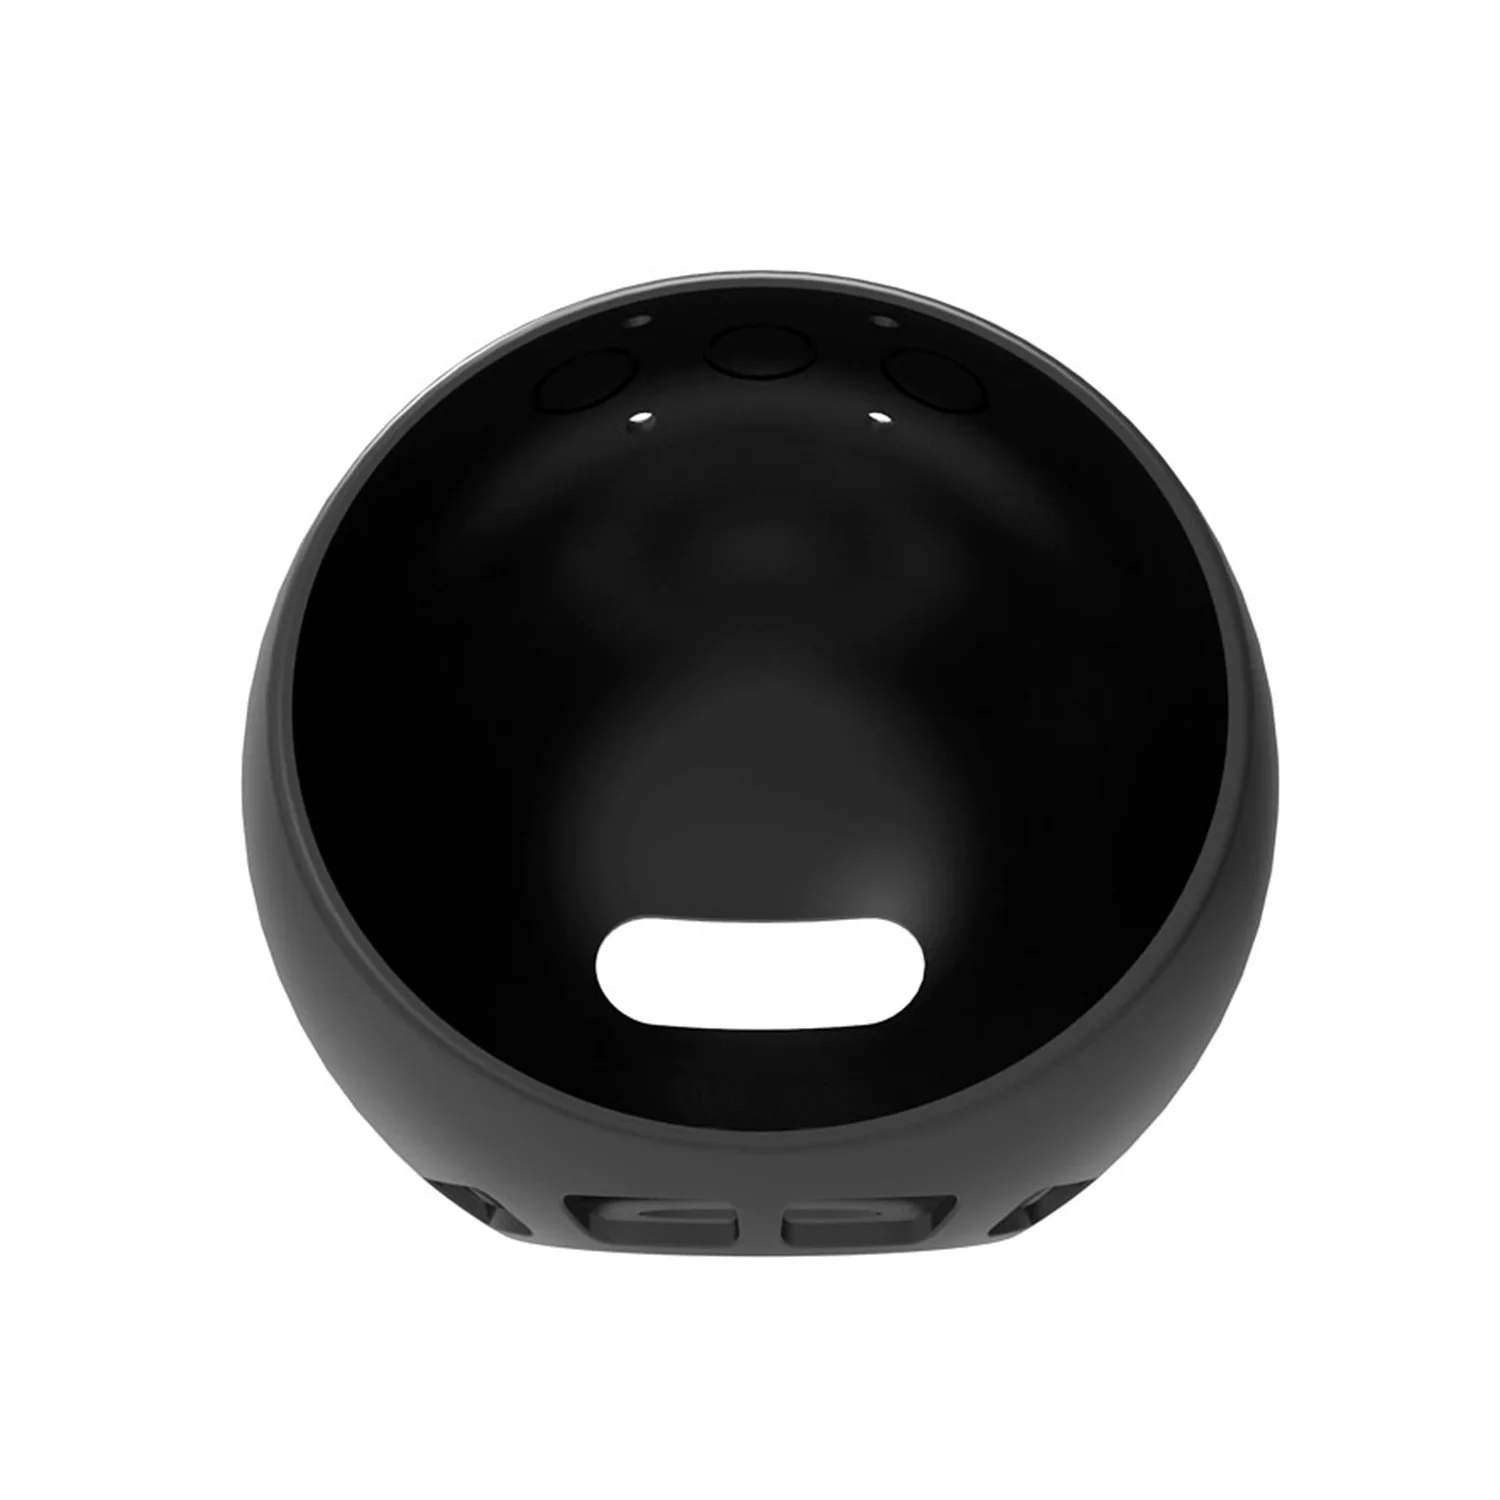 Gosear чехол для Echo Spot пылезащитный противоударный силиконовый защитный Amazon Smart Speaker